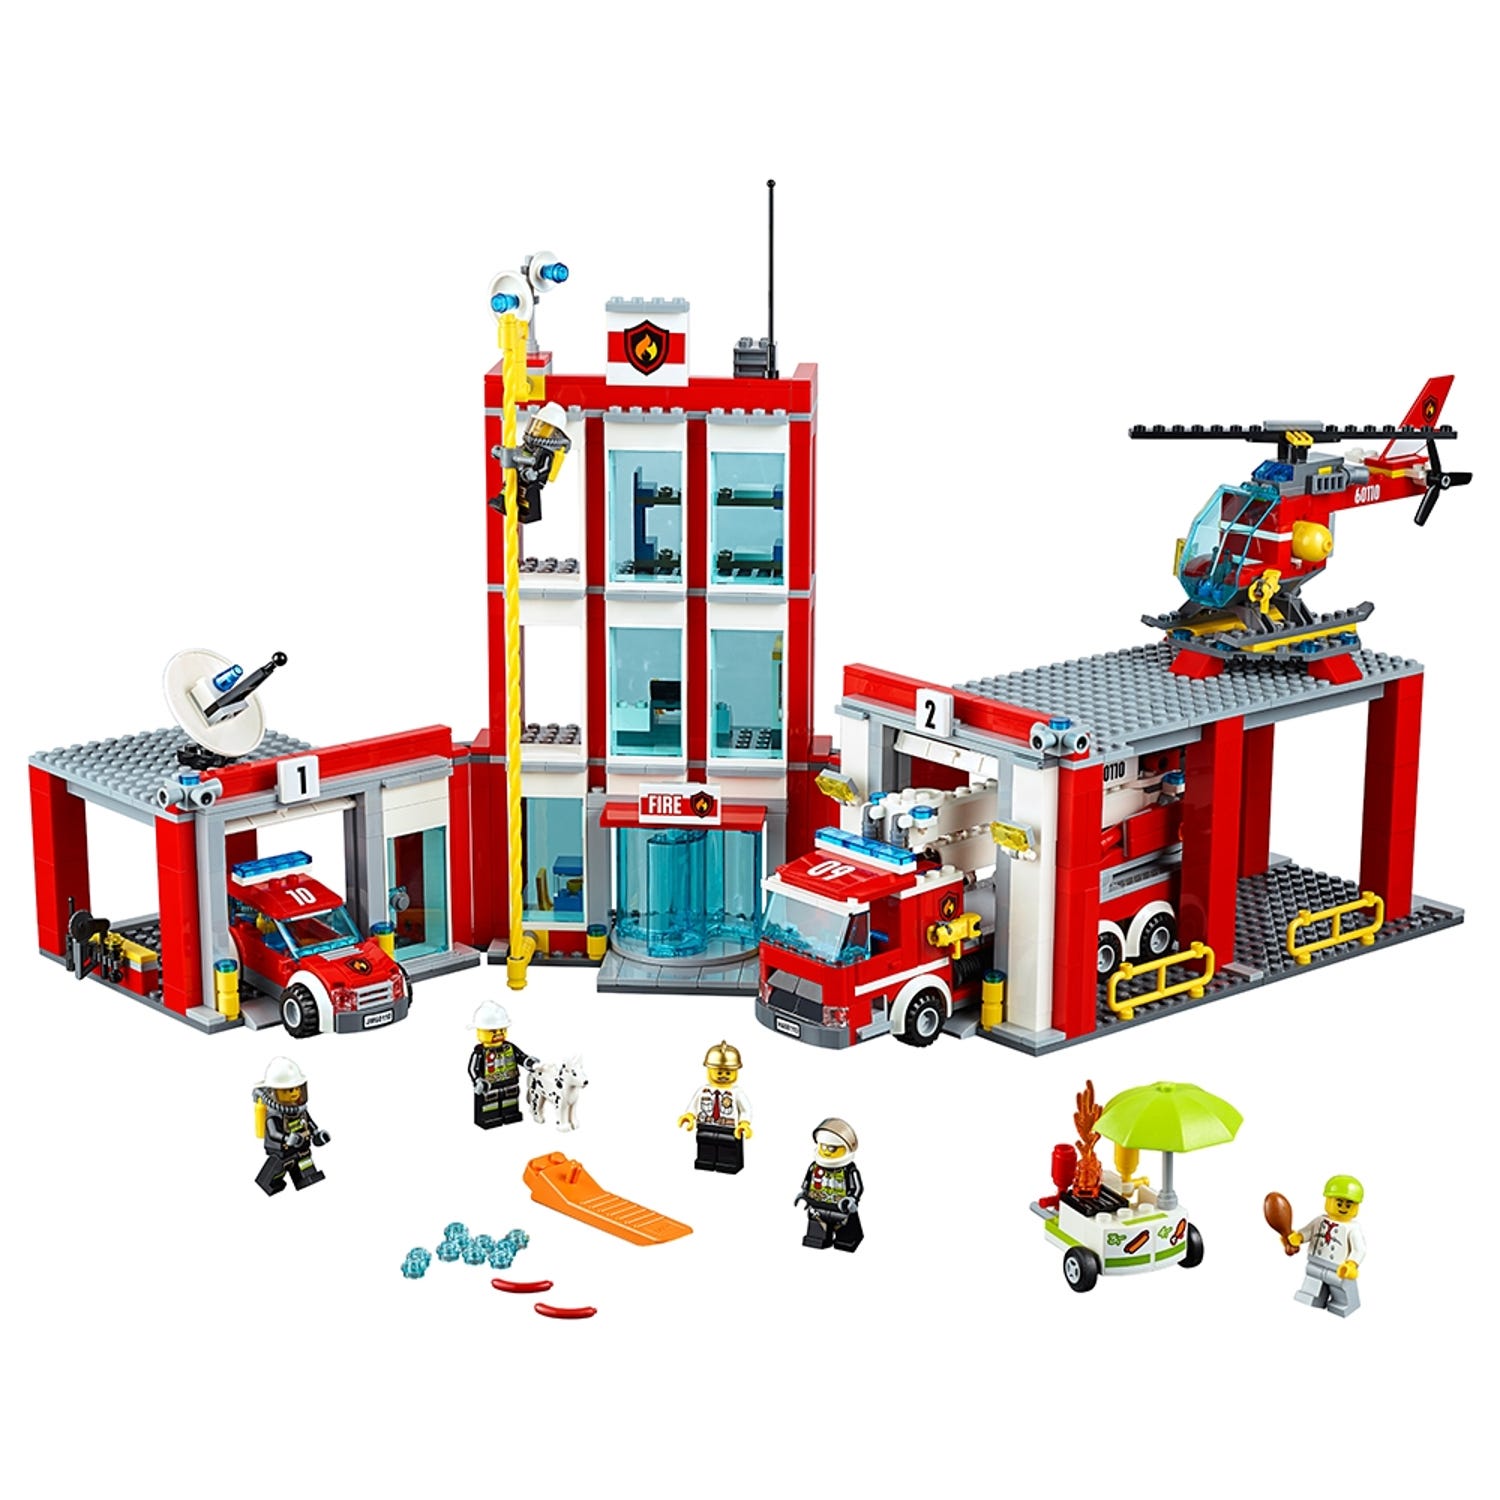 La caserne des pompiers 60110 | City | Boutique LEGO® officielle FR